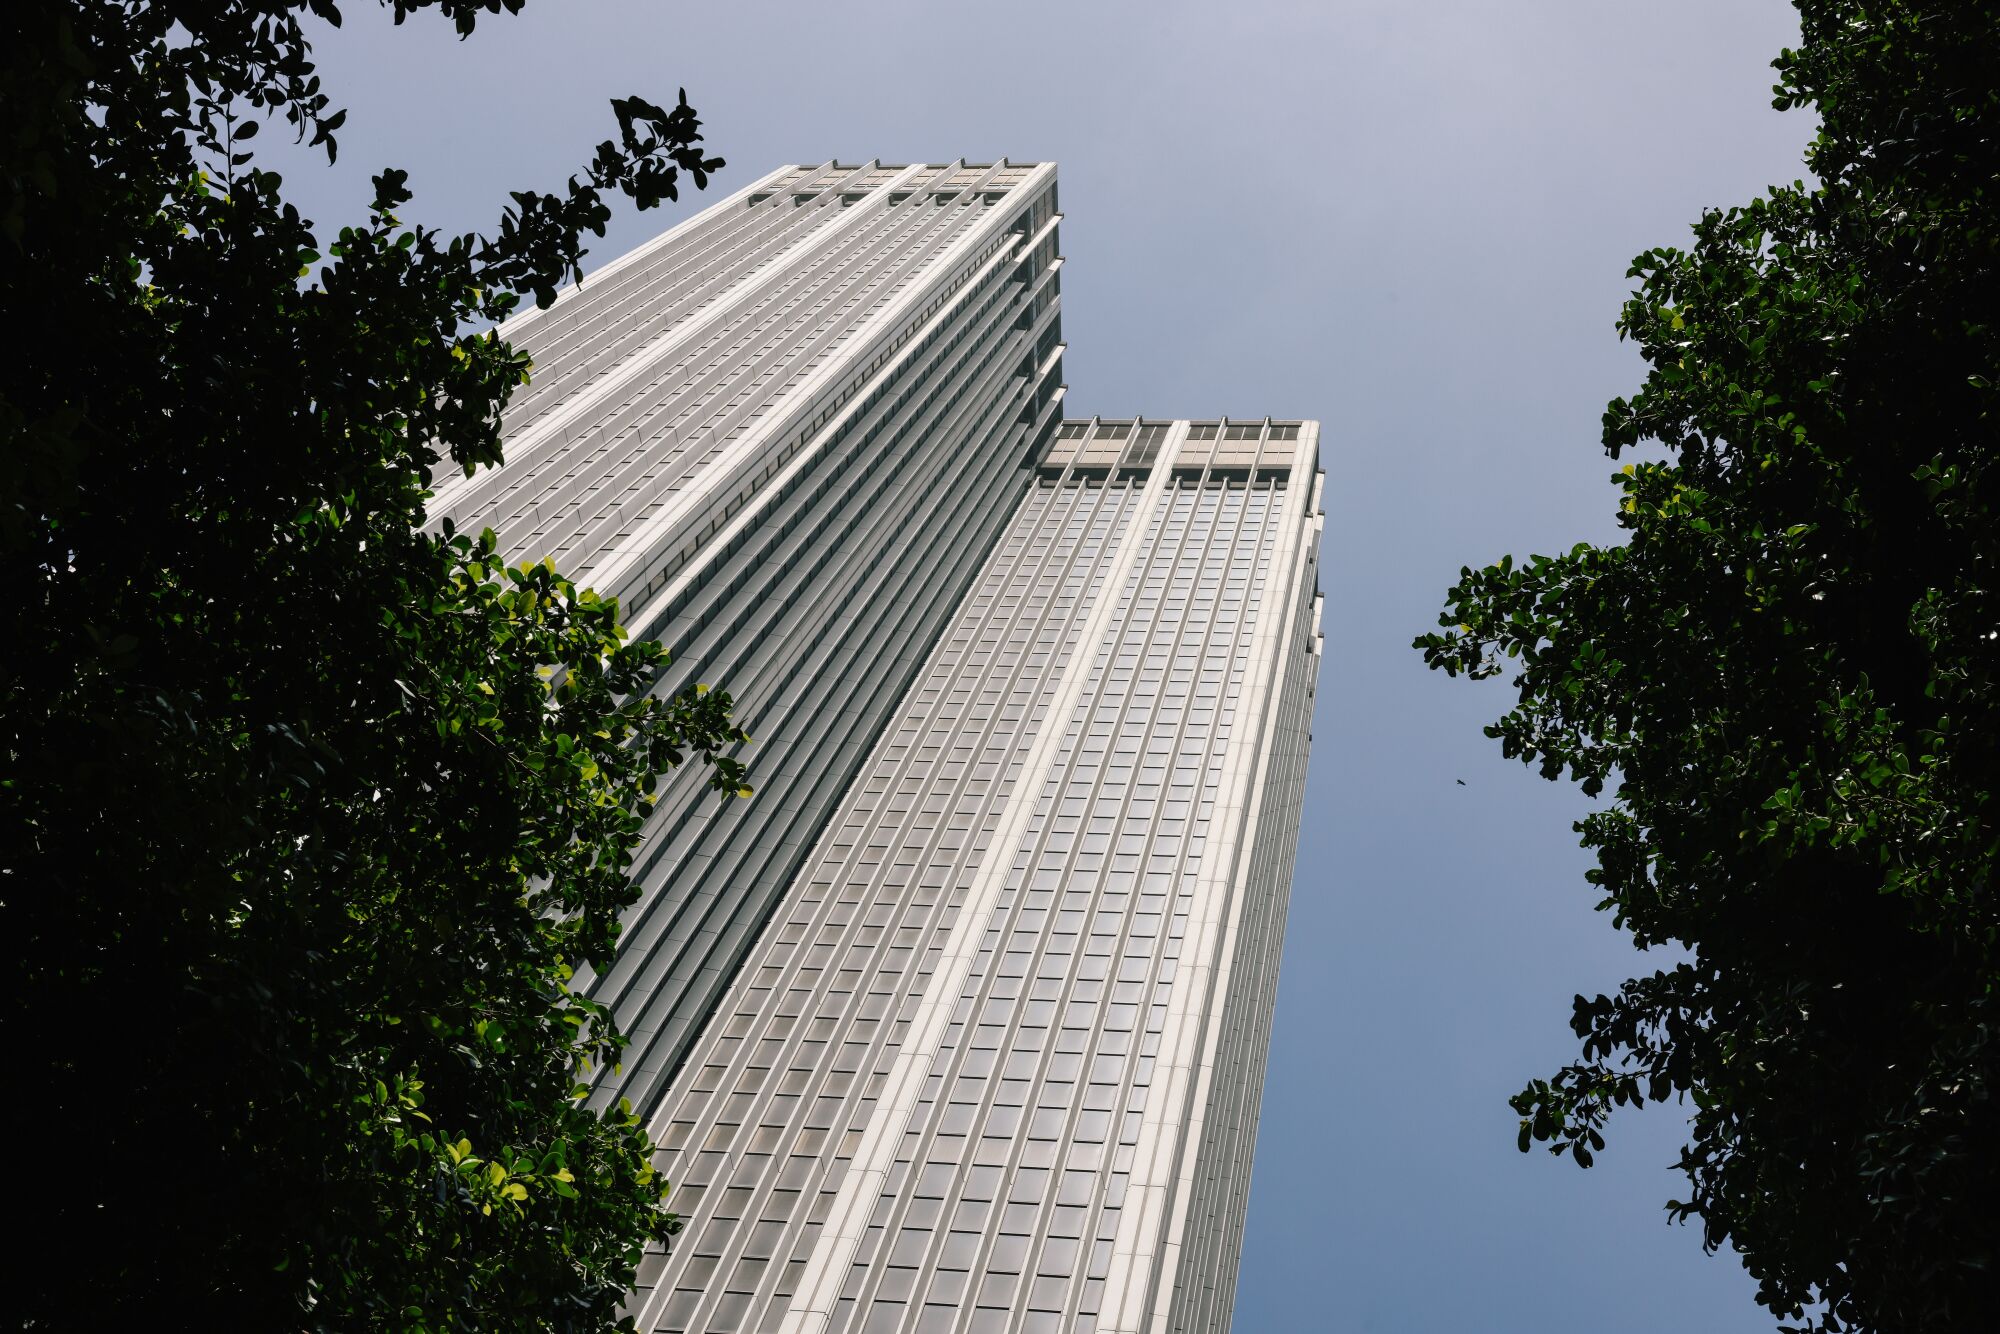 Una torre de oficinas de la década de 1960 que estuvo vacante durante mucho tiempo en el distrito financiero y que fue diseñada por el destacado arquitecto de mediados de siglo William Pereira.